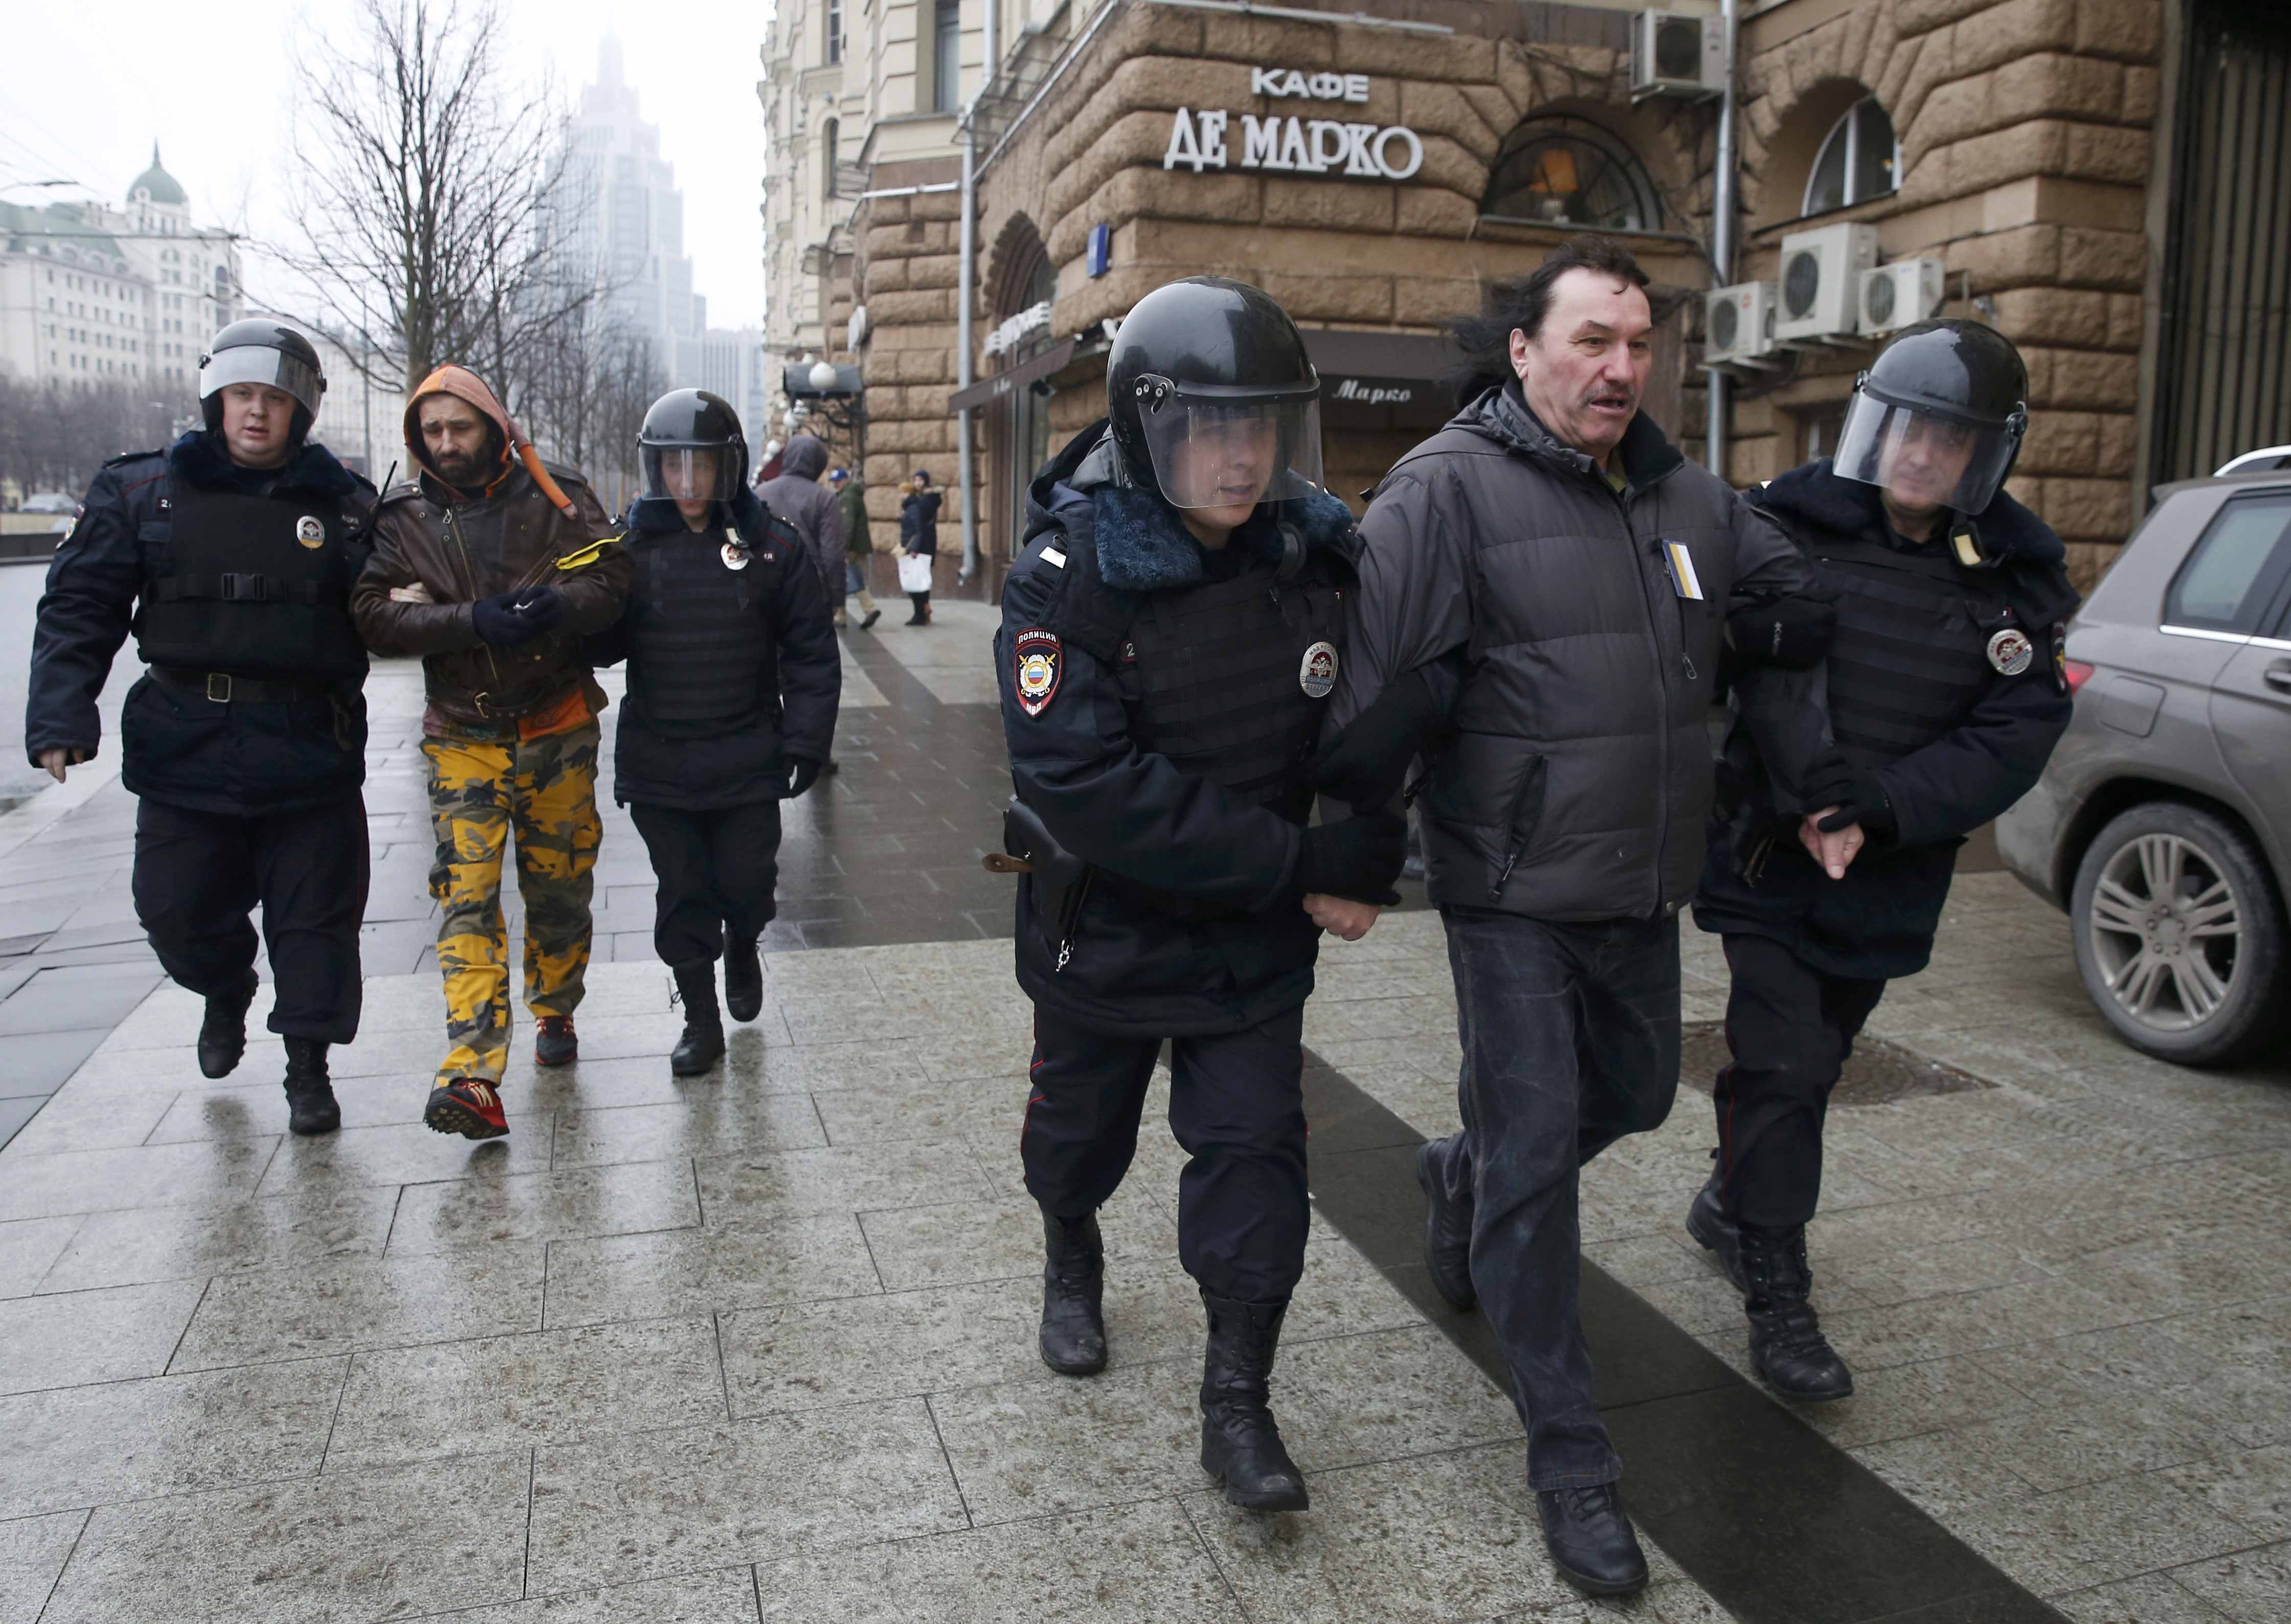 إلقاء القبض على العشرات خلال تظاهرة للمعارضة فى موسكو